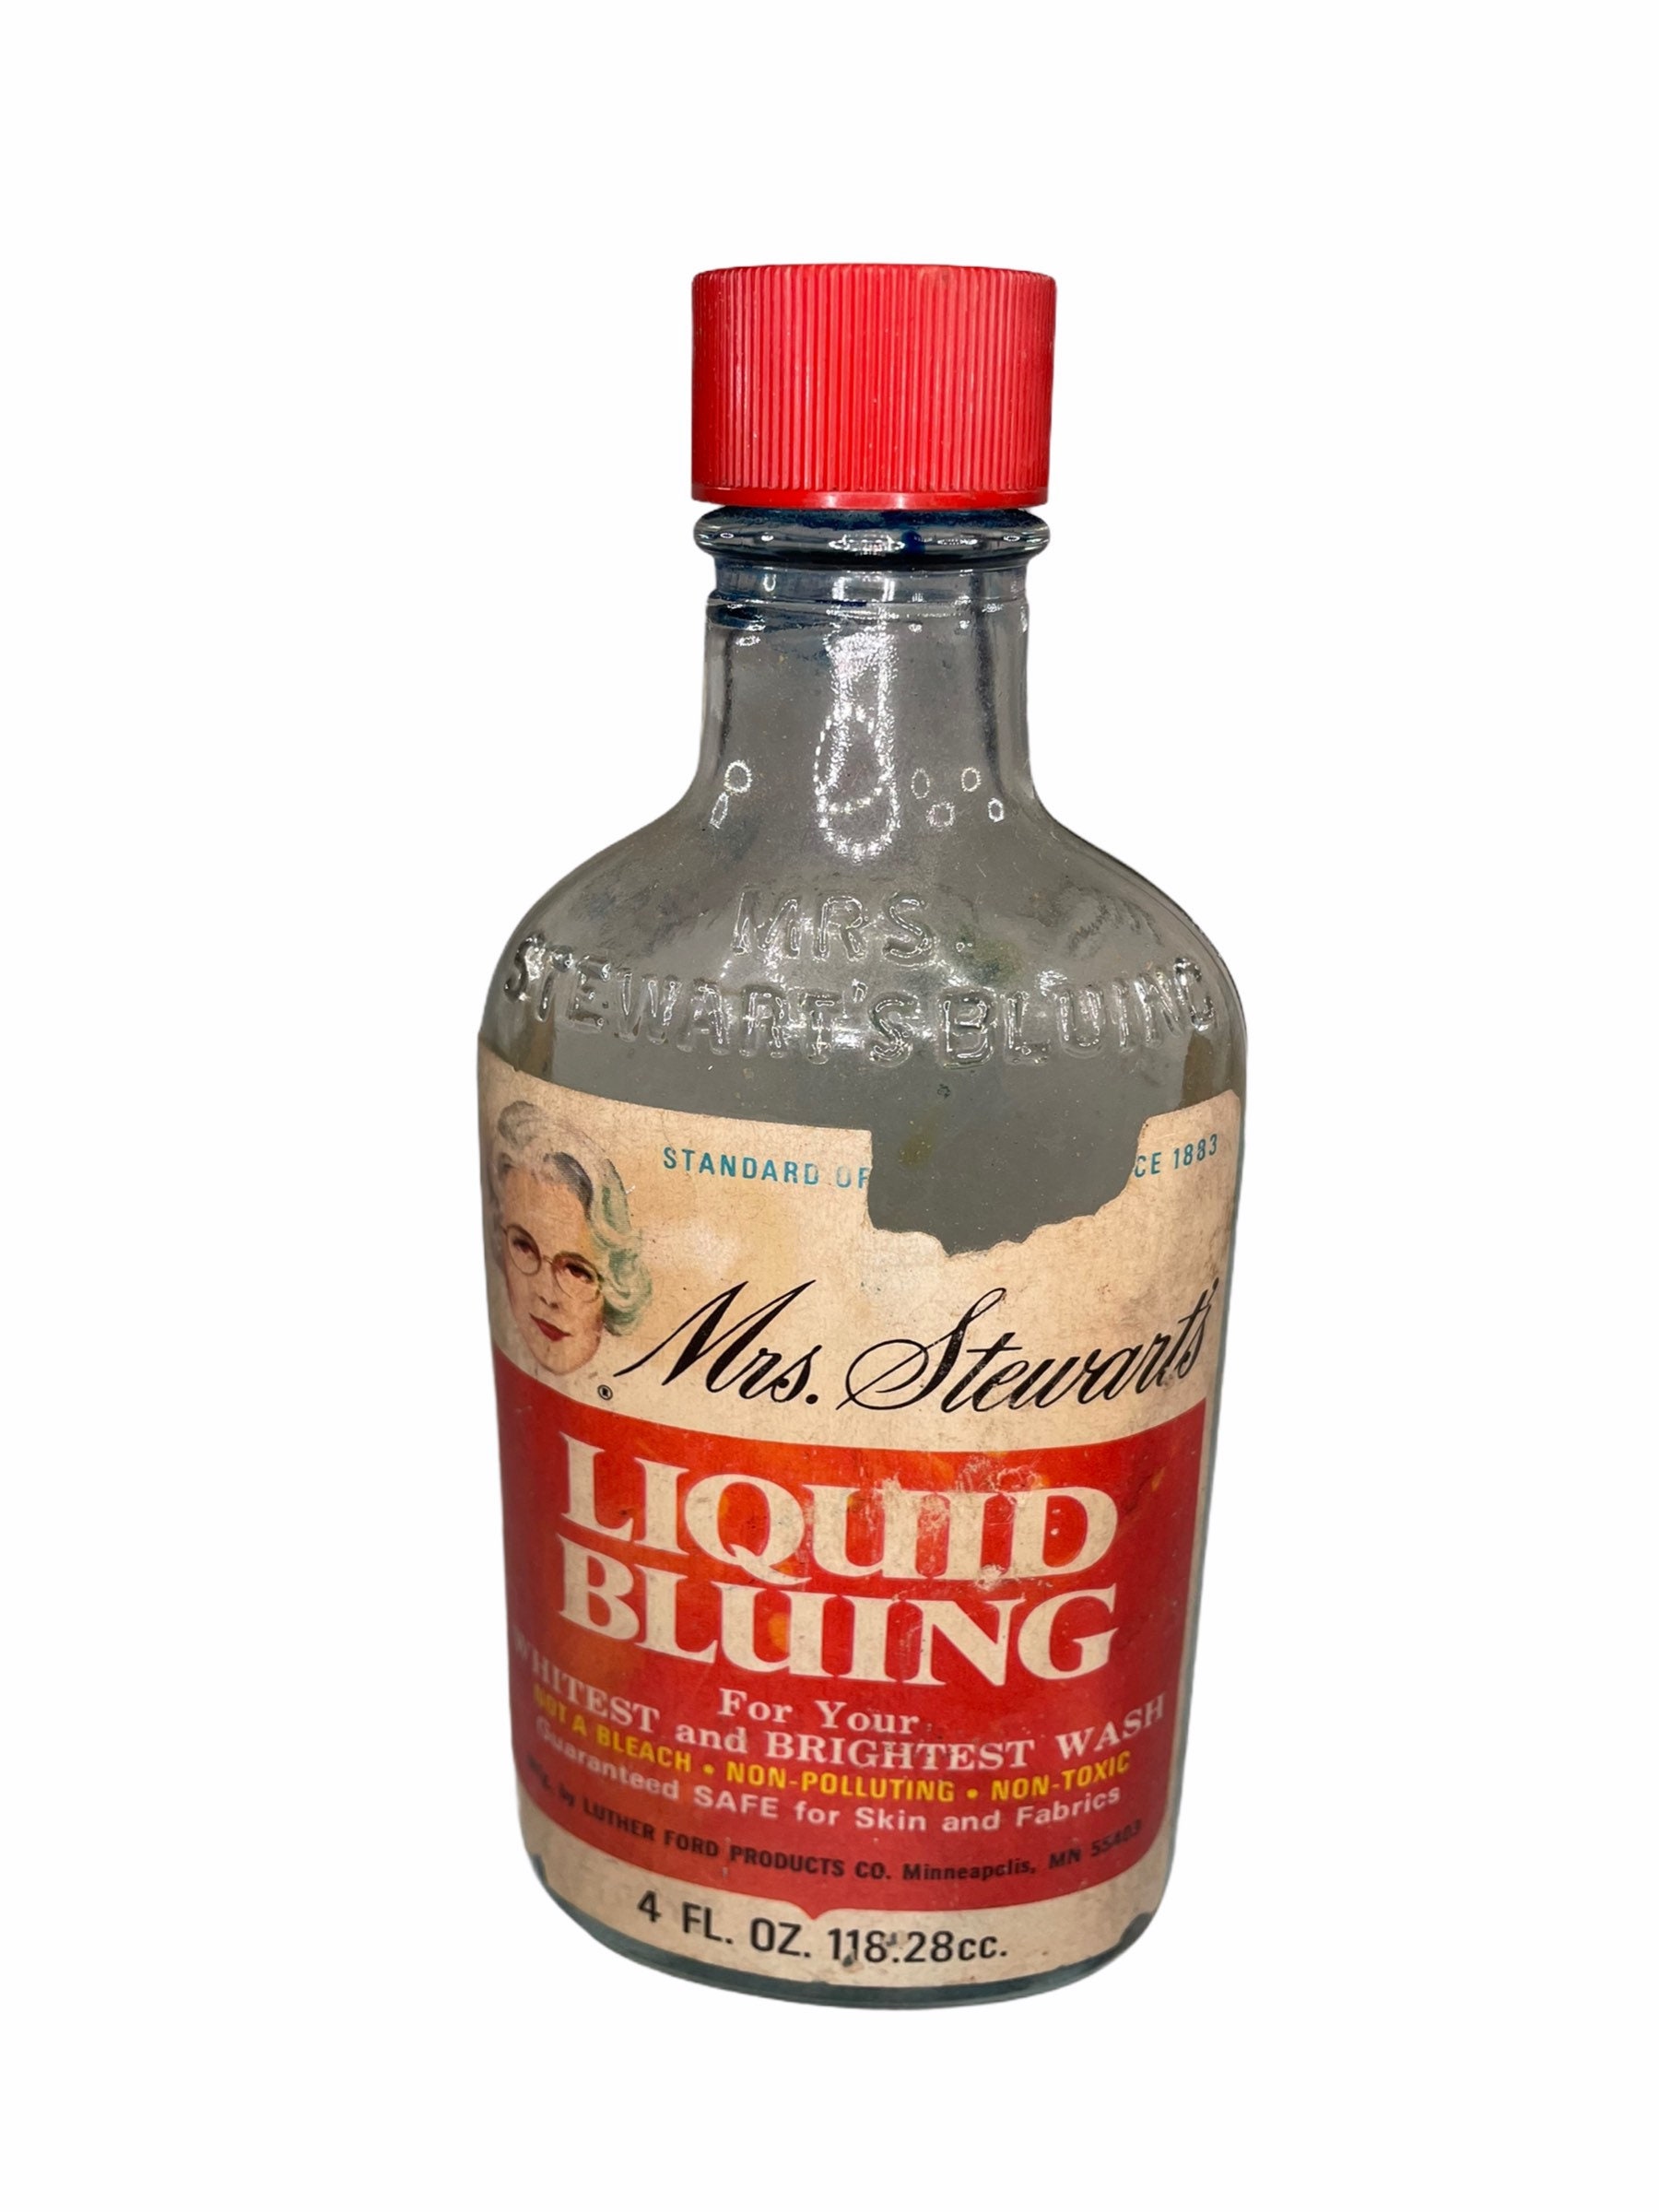 Mrs. Stewart's Concentrated Liquid Bluing - 8 fl oz bottle